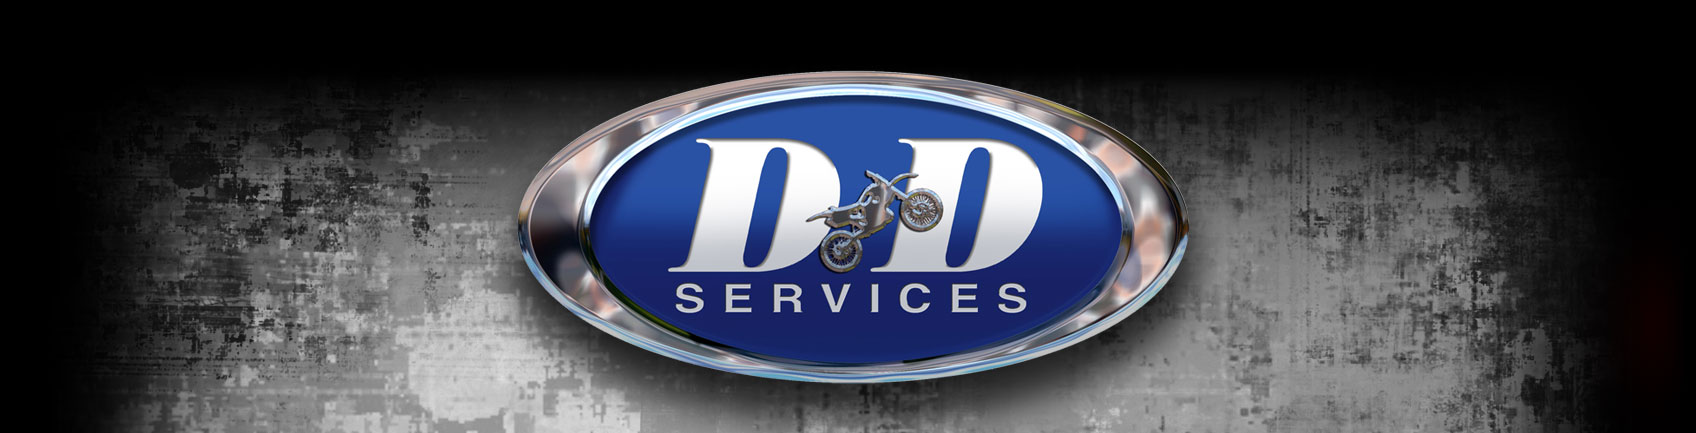 D & D Services